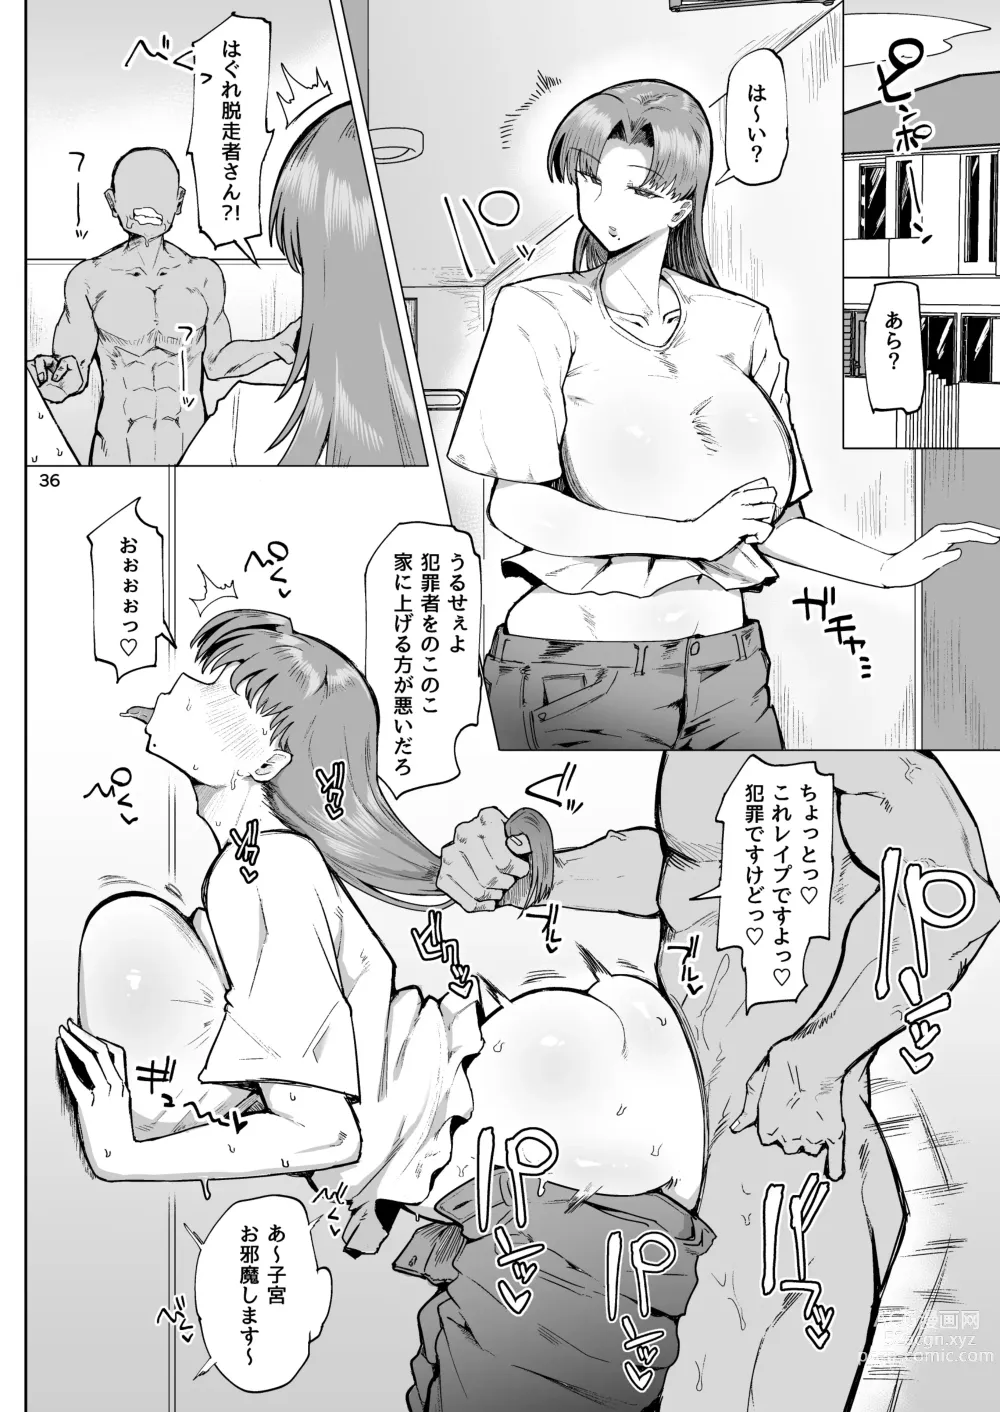 Page 35 of doujinshi Nandemo Chousa Mama Kuma Shizue wa Teiko ga Dekinai